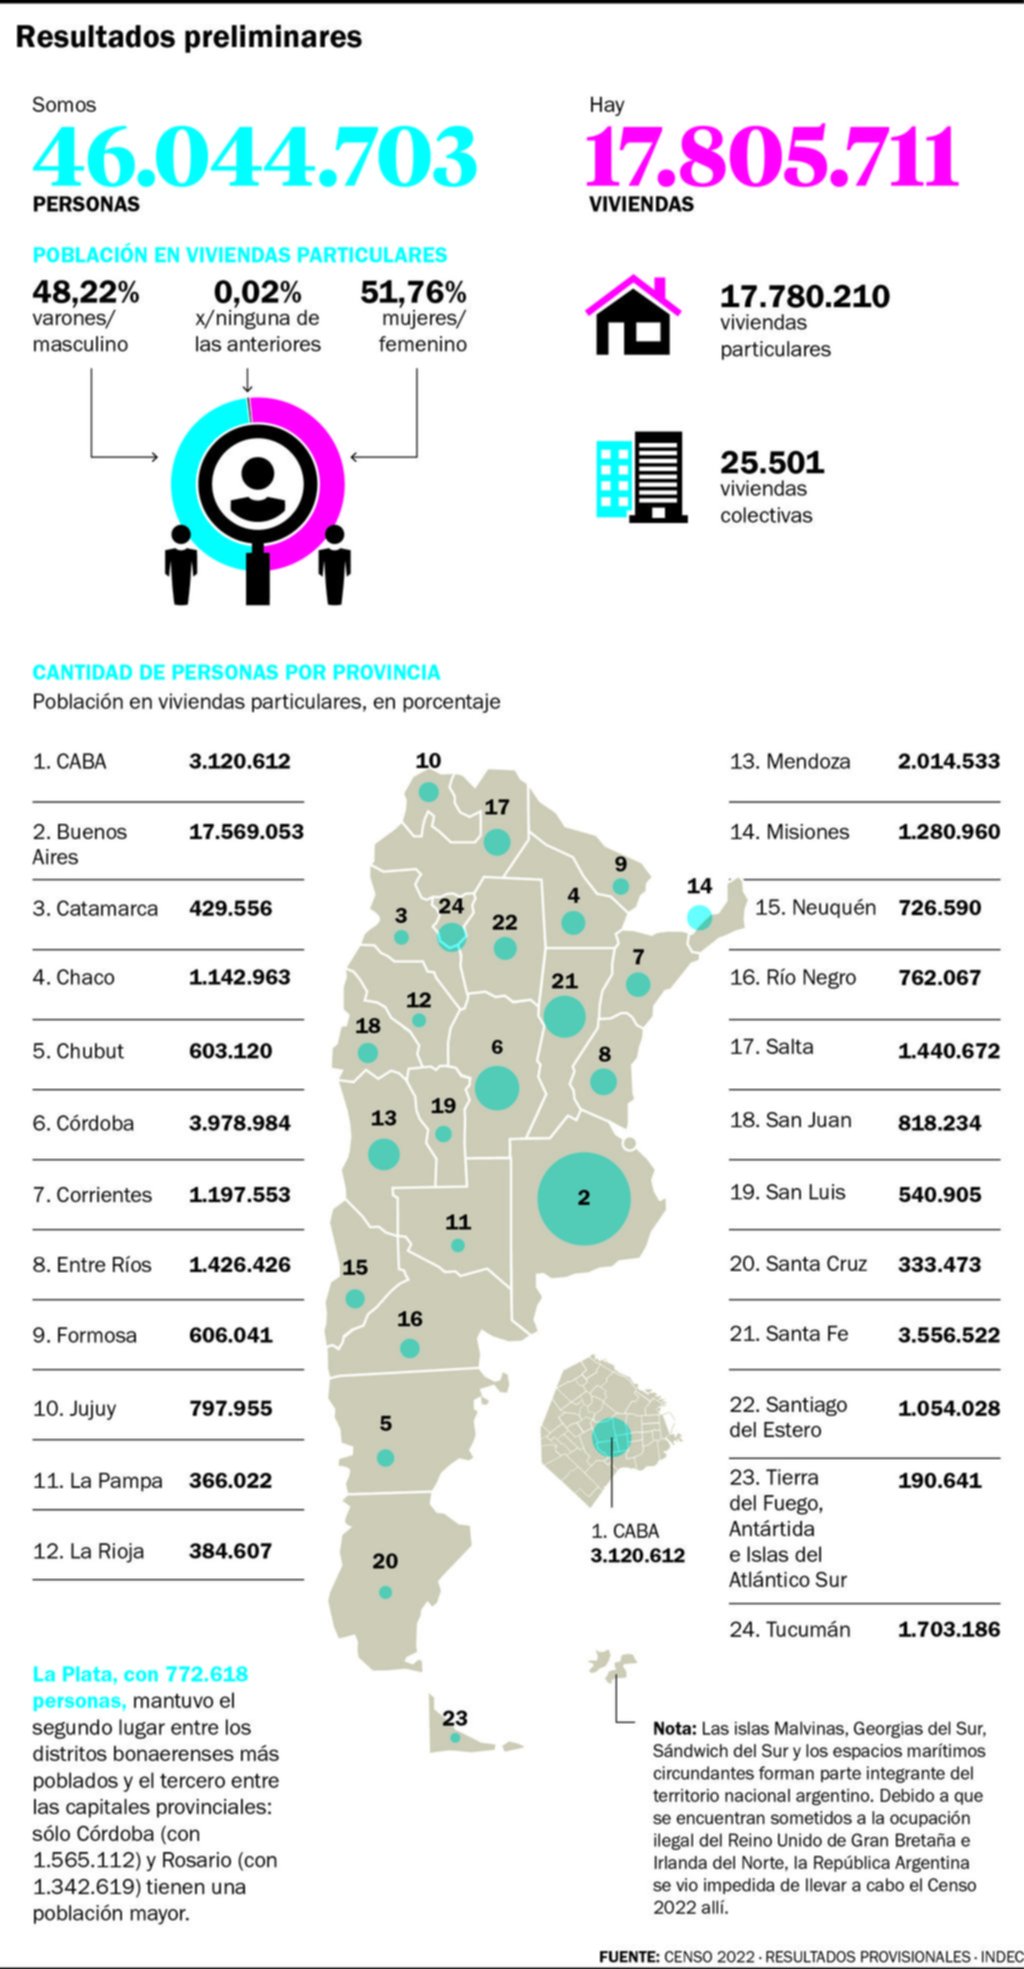 La Plata tiene 772.618 habitantes: la segunda ciudad más poblada de la Provincia